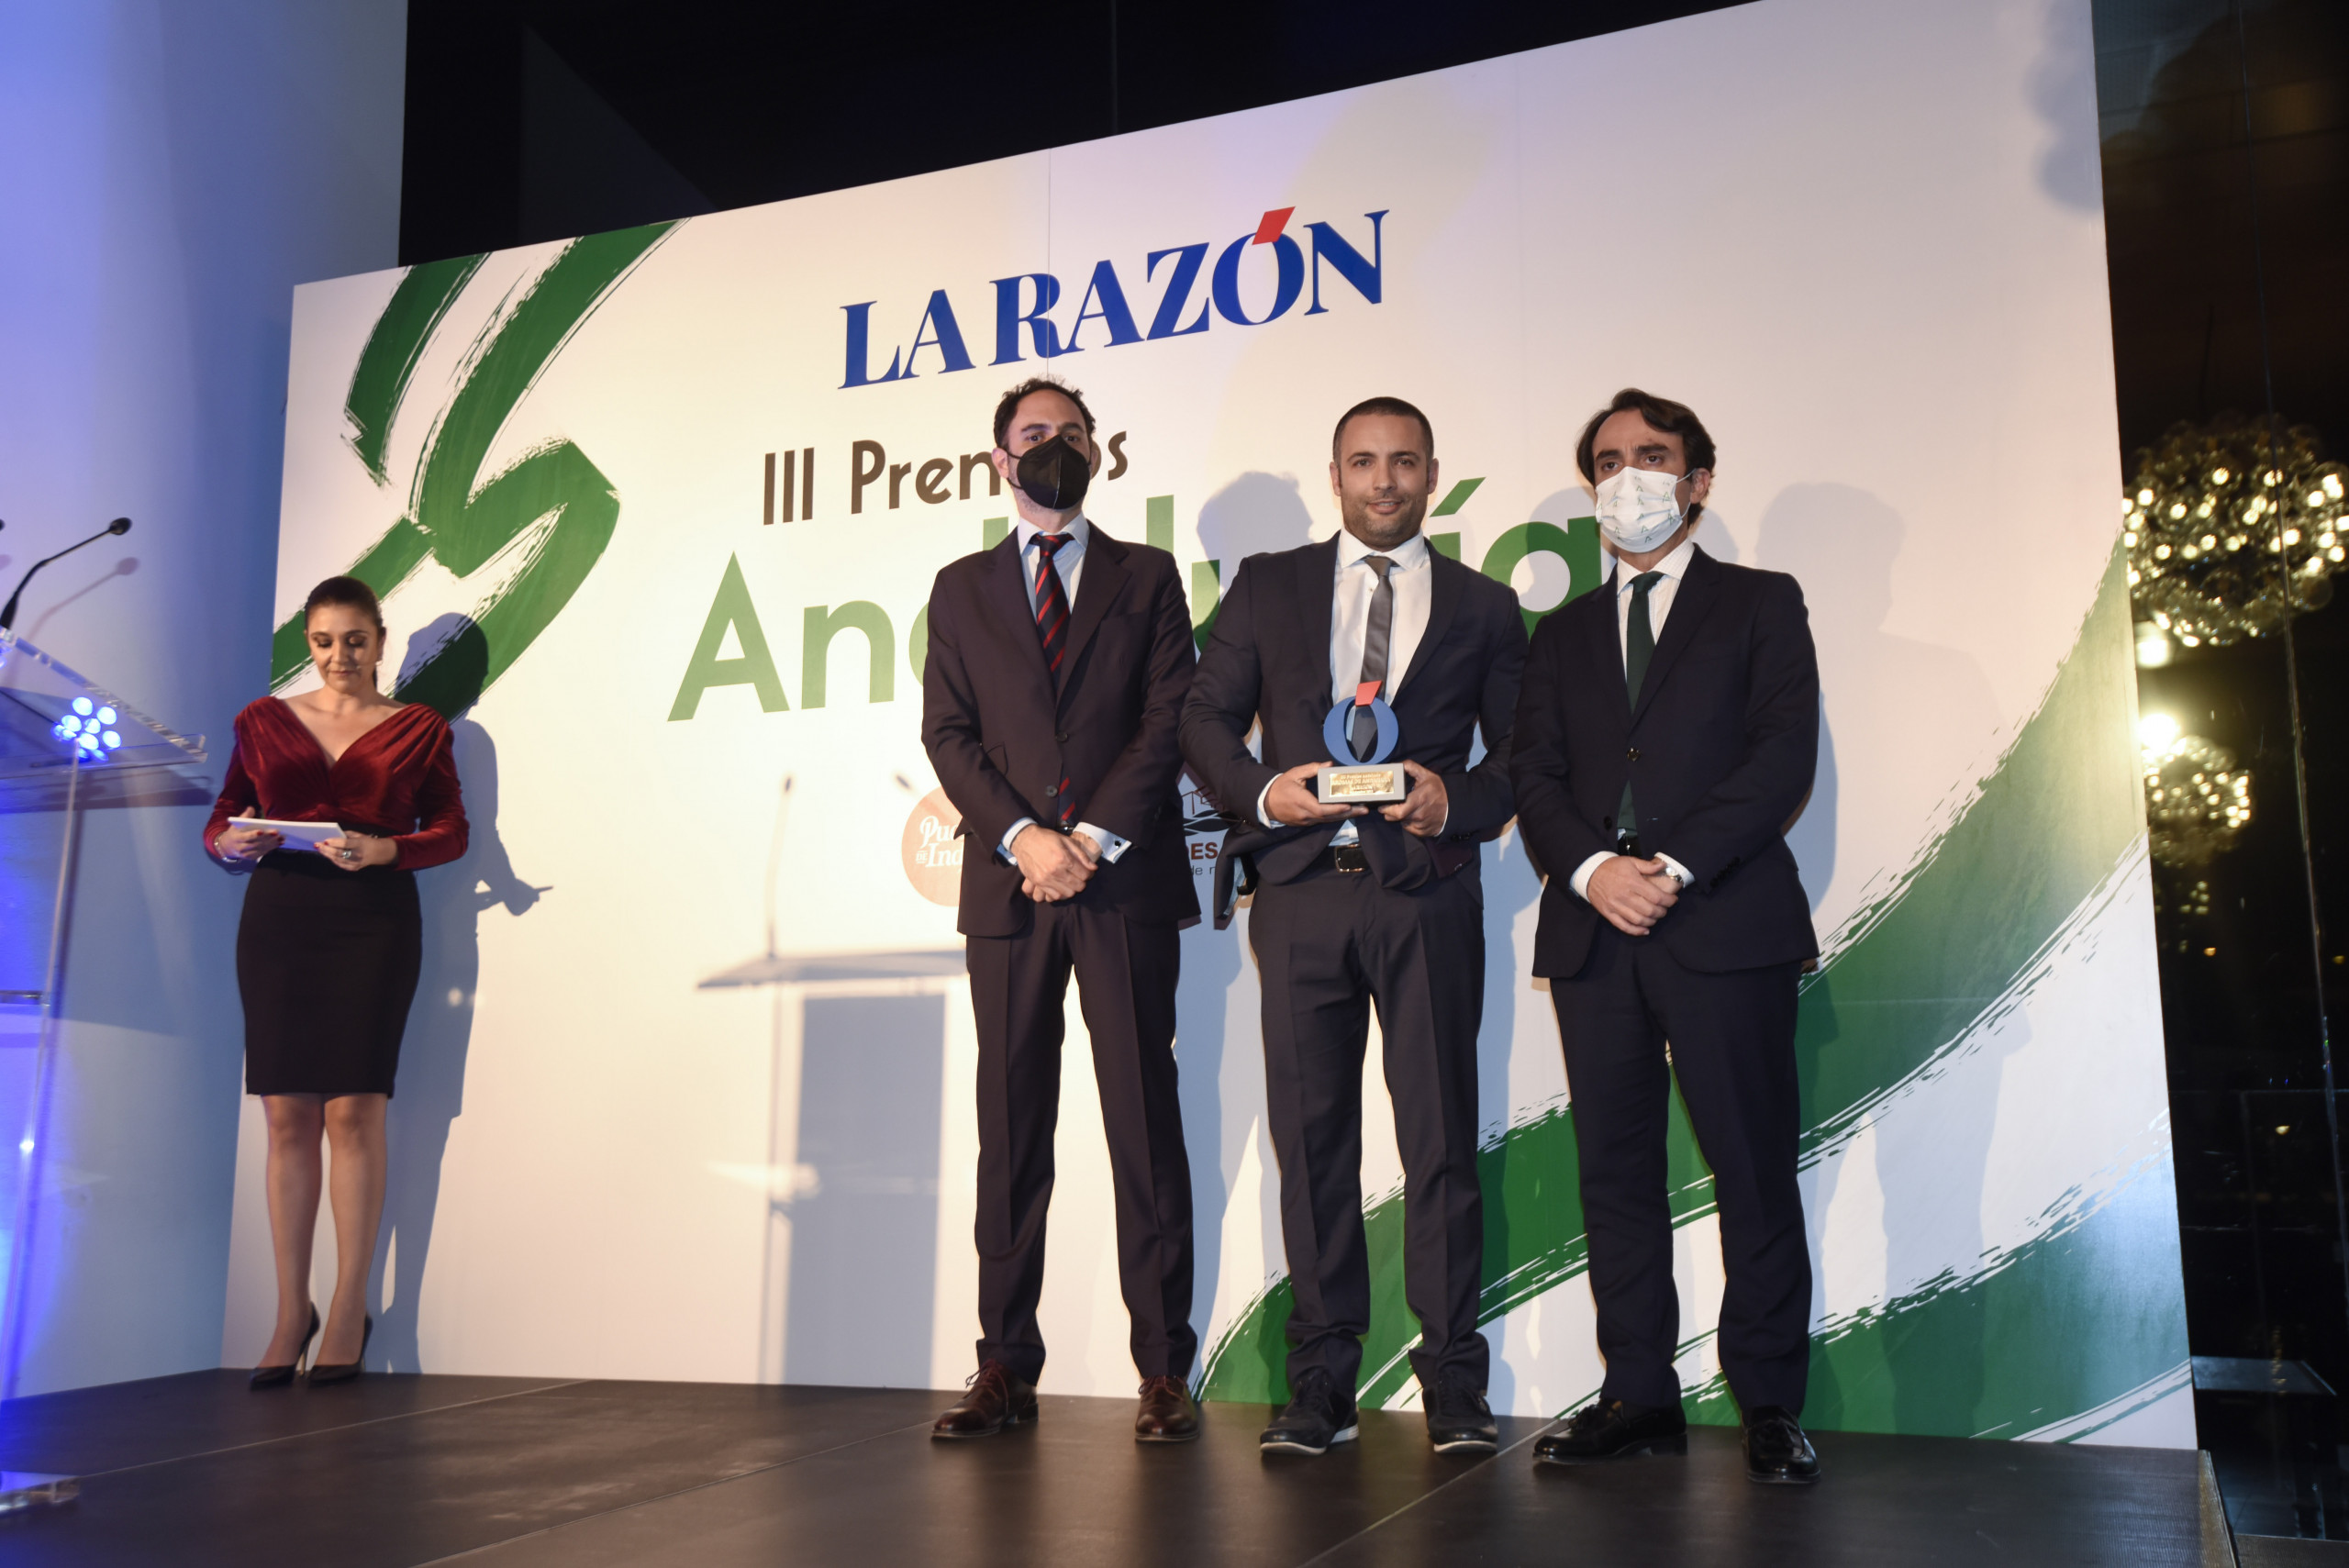 David Fernandez, perfumista y CEO de Aromas de Andalucía recogiendo el premio a la Innovación y el Compromiso con el Medio Ambiente de La Razón.